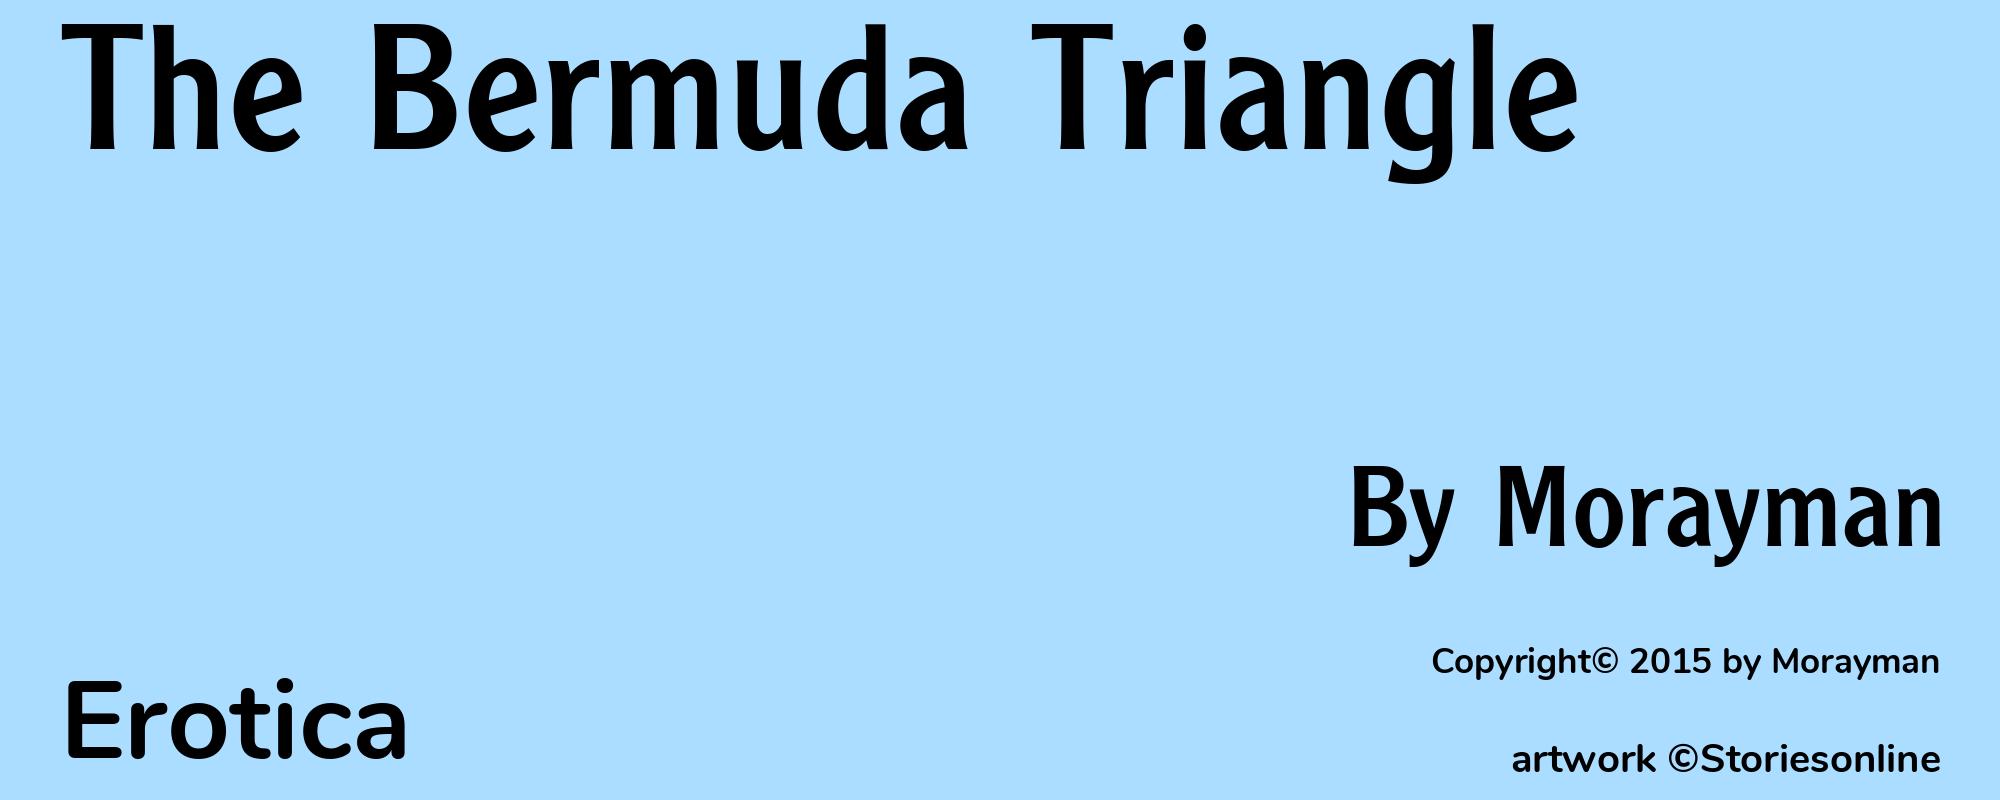 The Bermuda Triangle - Cover